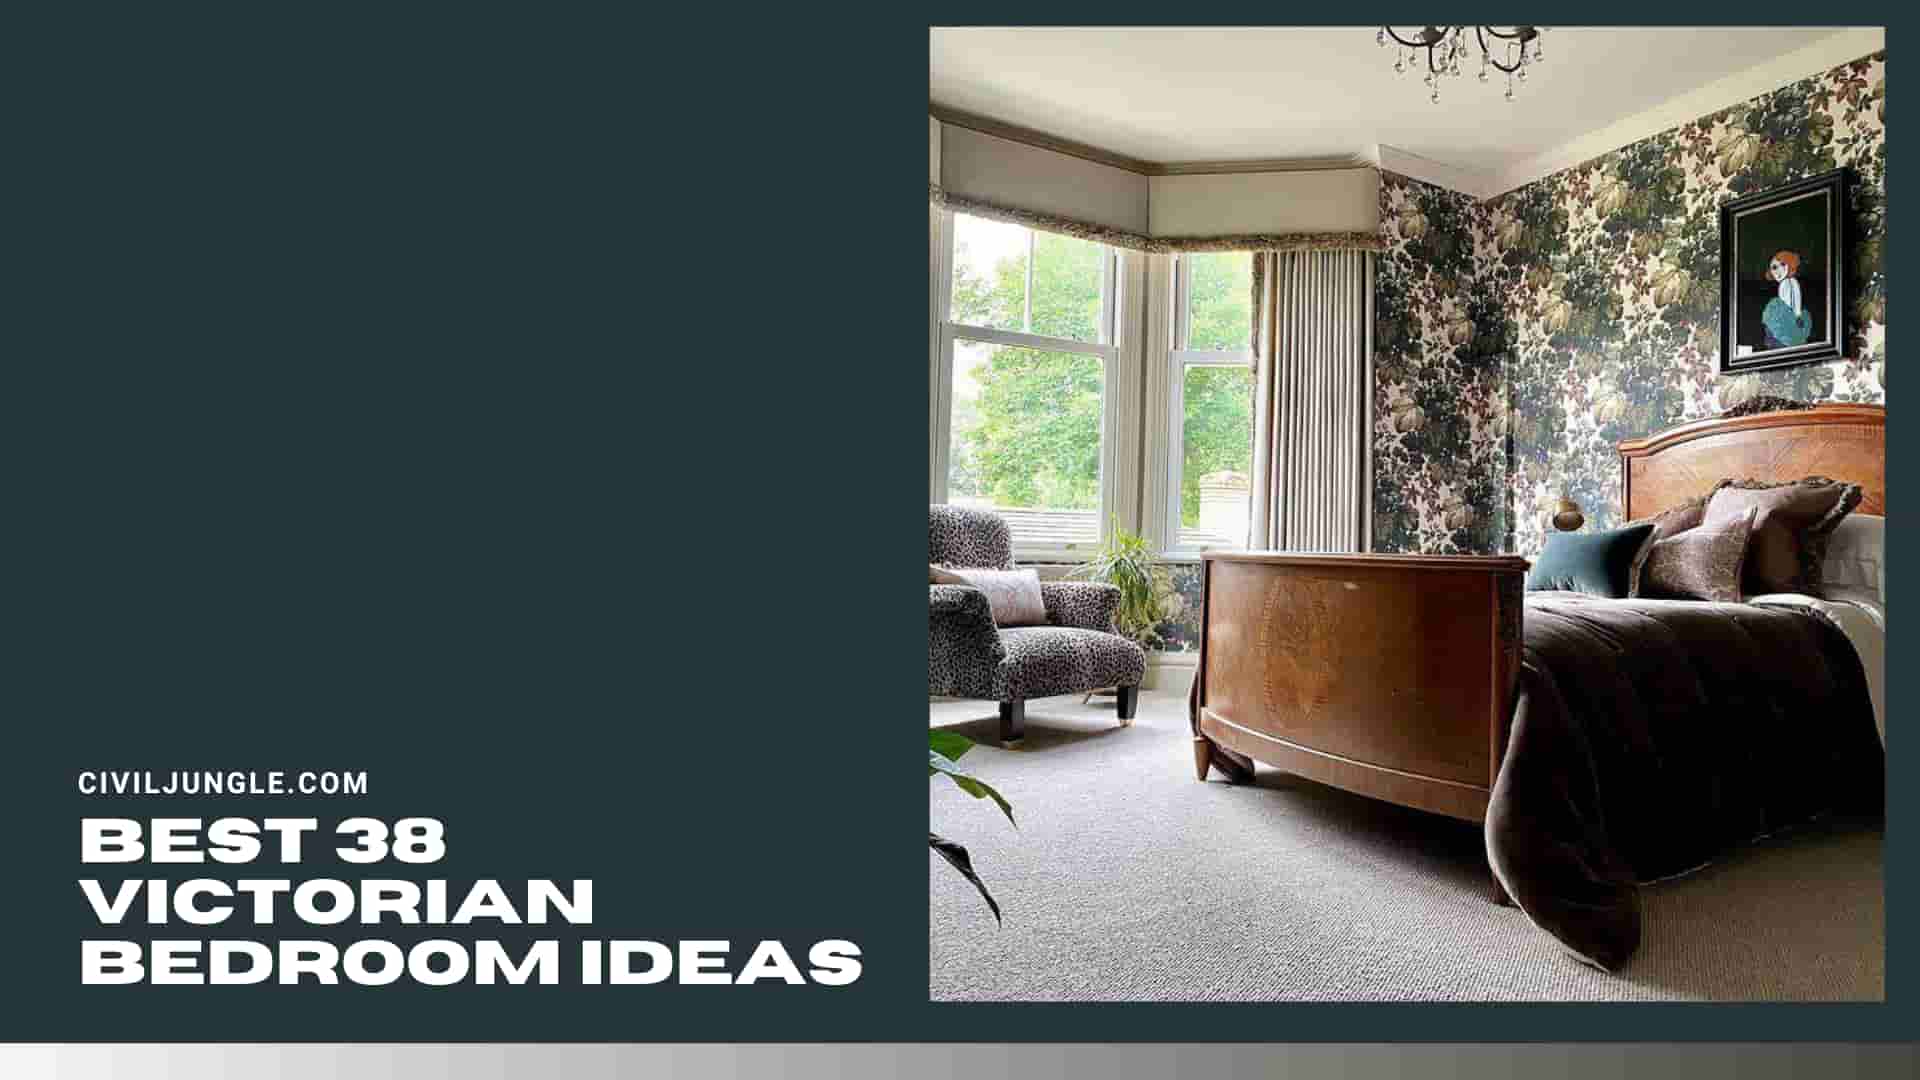 Best 38 Victorian Bedroom Ideas